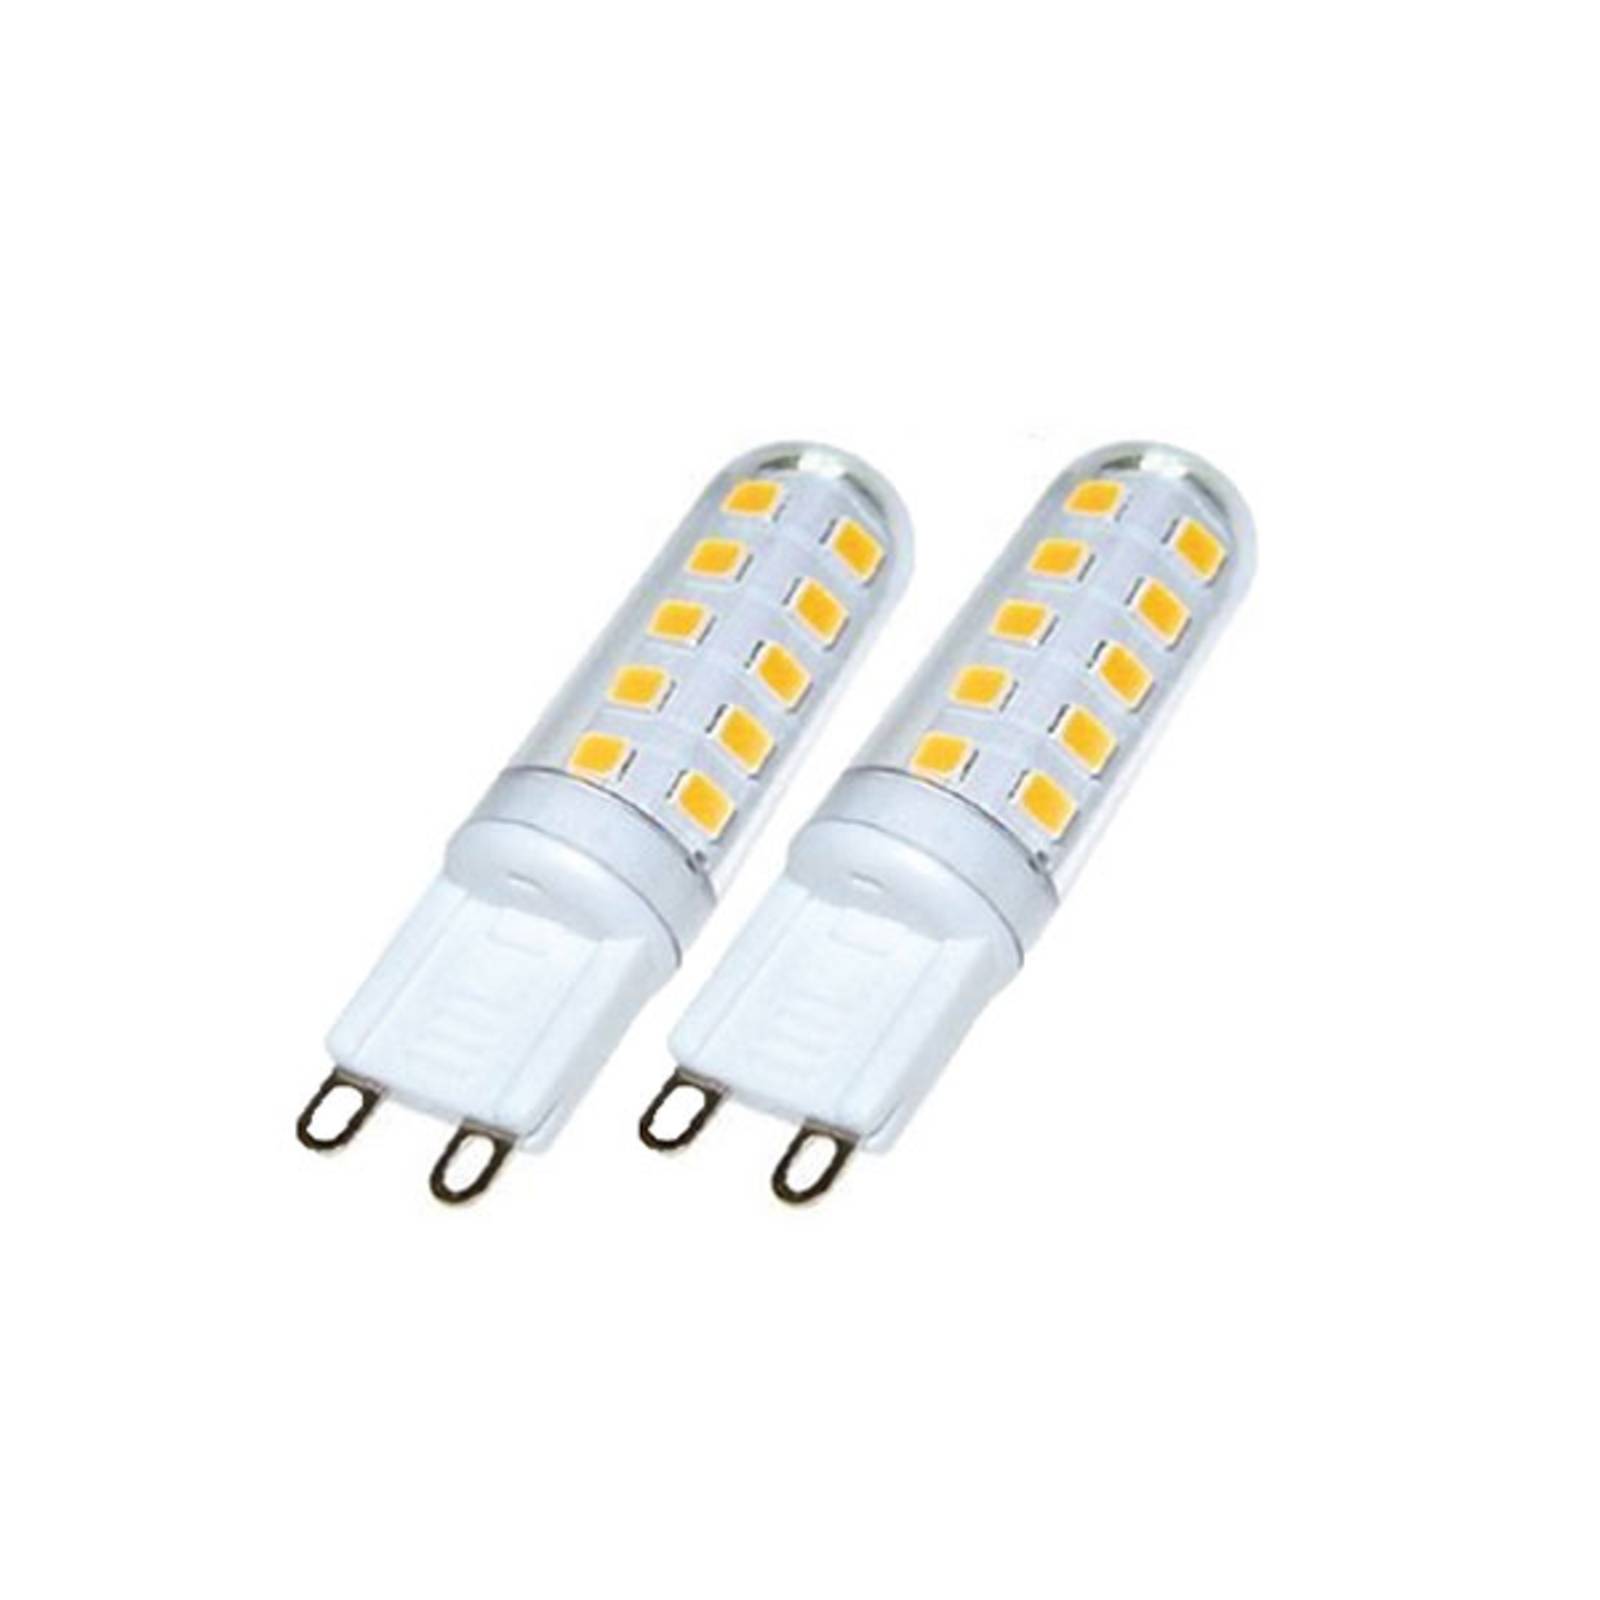 Trio Lighting LED-stiftpære G9 3W 830 switch-dim 2stk